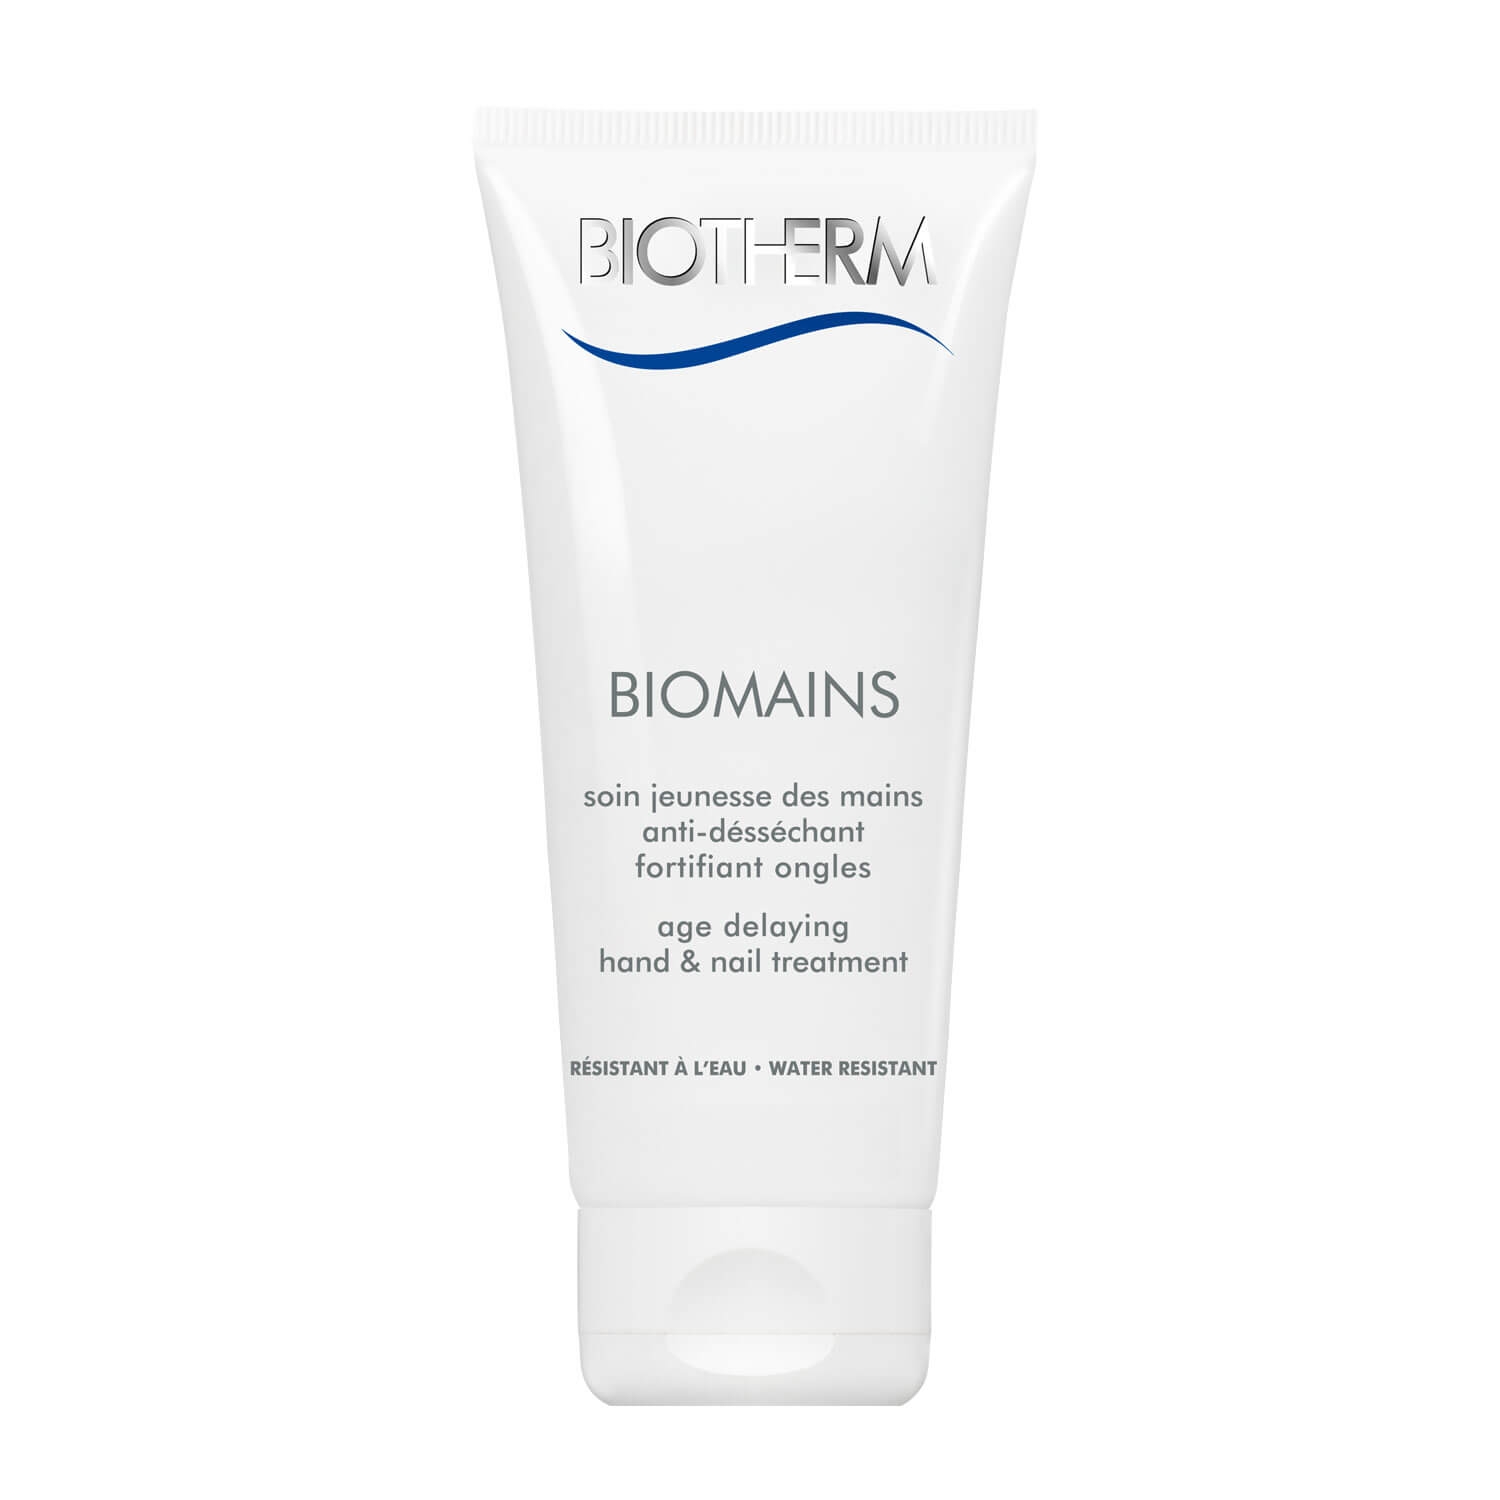 Produktbild von Biotherm Body - Biomains Limited Edition